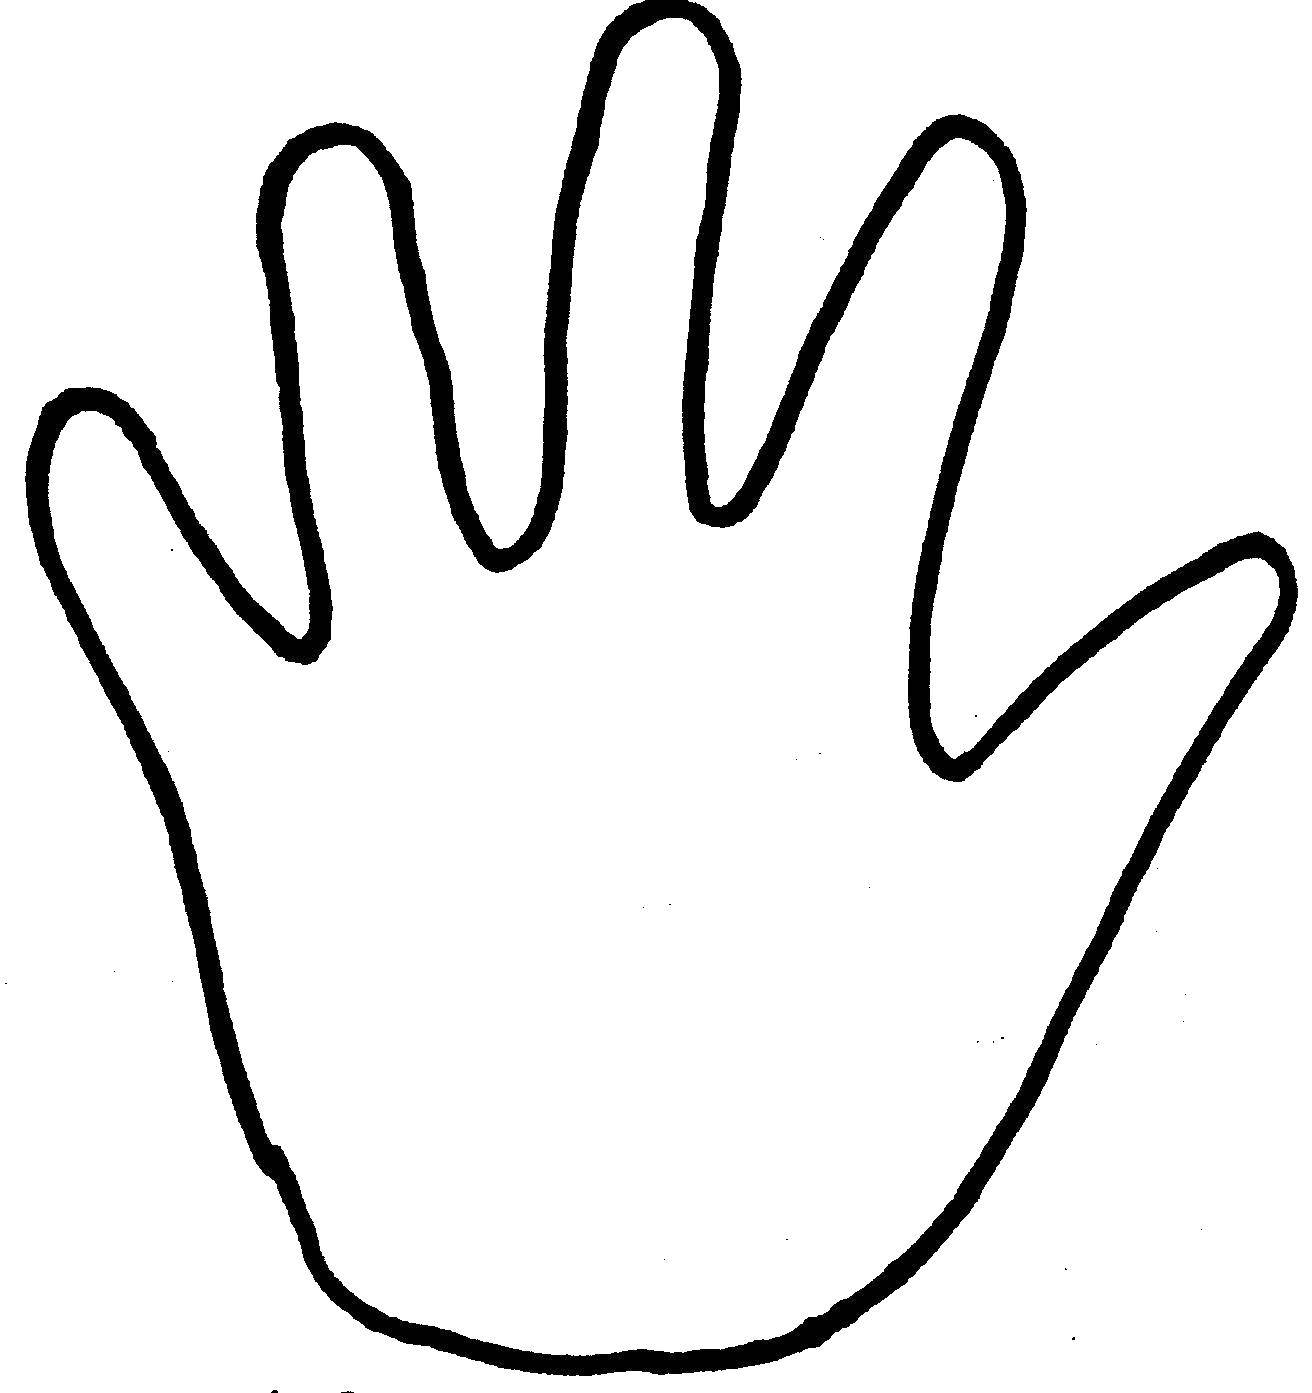 Название: Раскраска Контур руки для вырезания. Категория: Контур руки и ладошки для вырезания. Теги: руки, ладони, для вырезания.